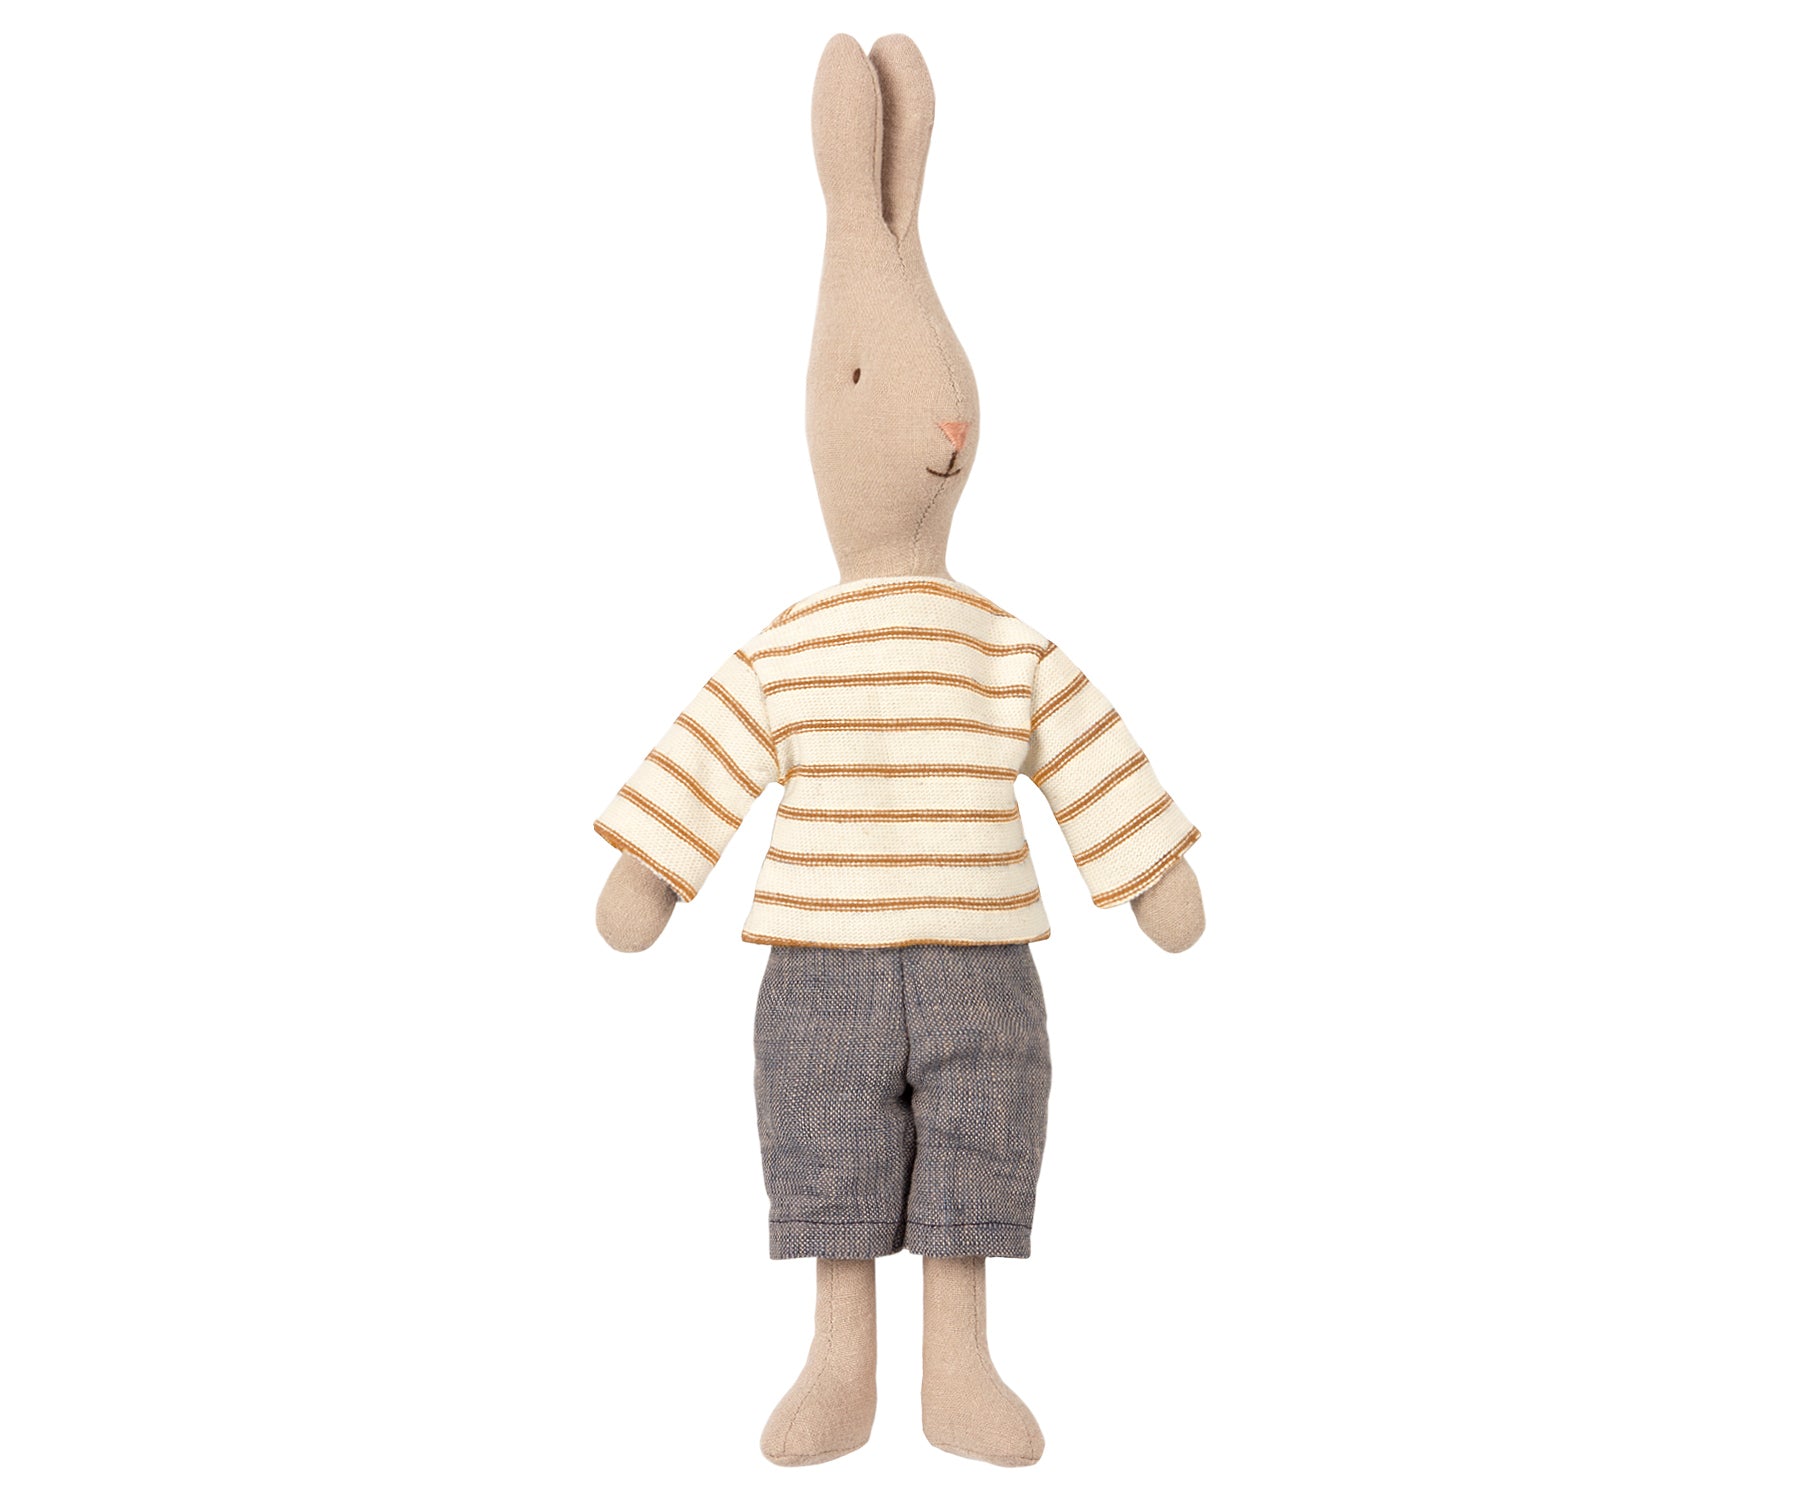 Conejito sailor talla 2 (rabbit, 32 cm) - Miss Coppelia